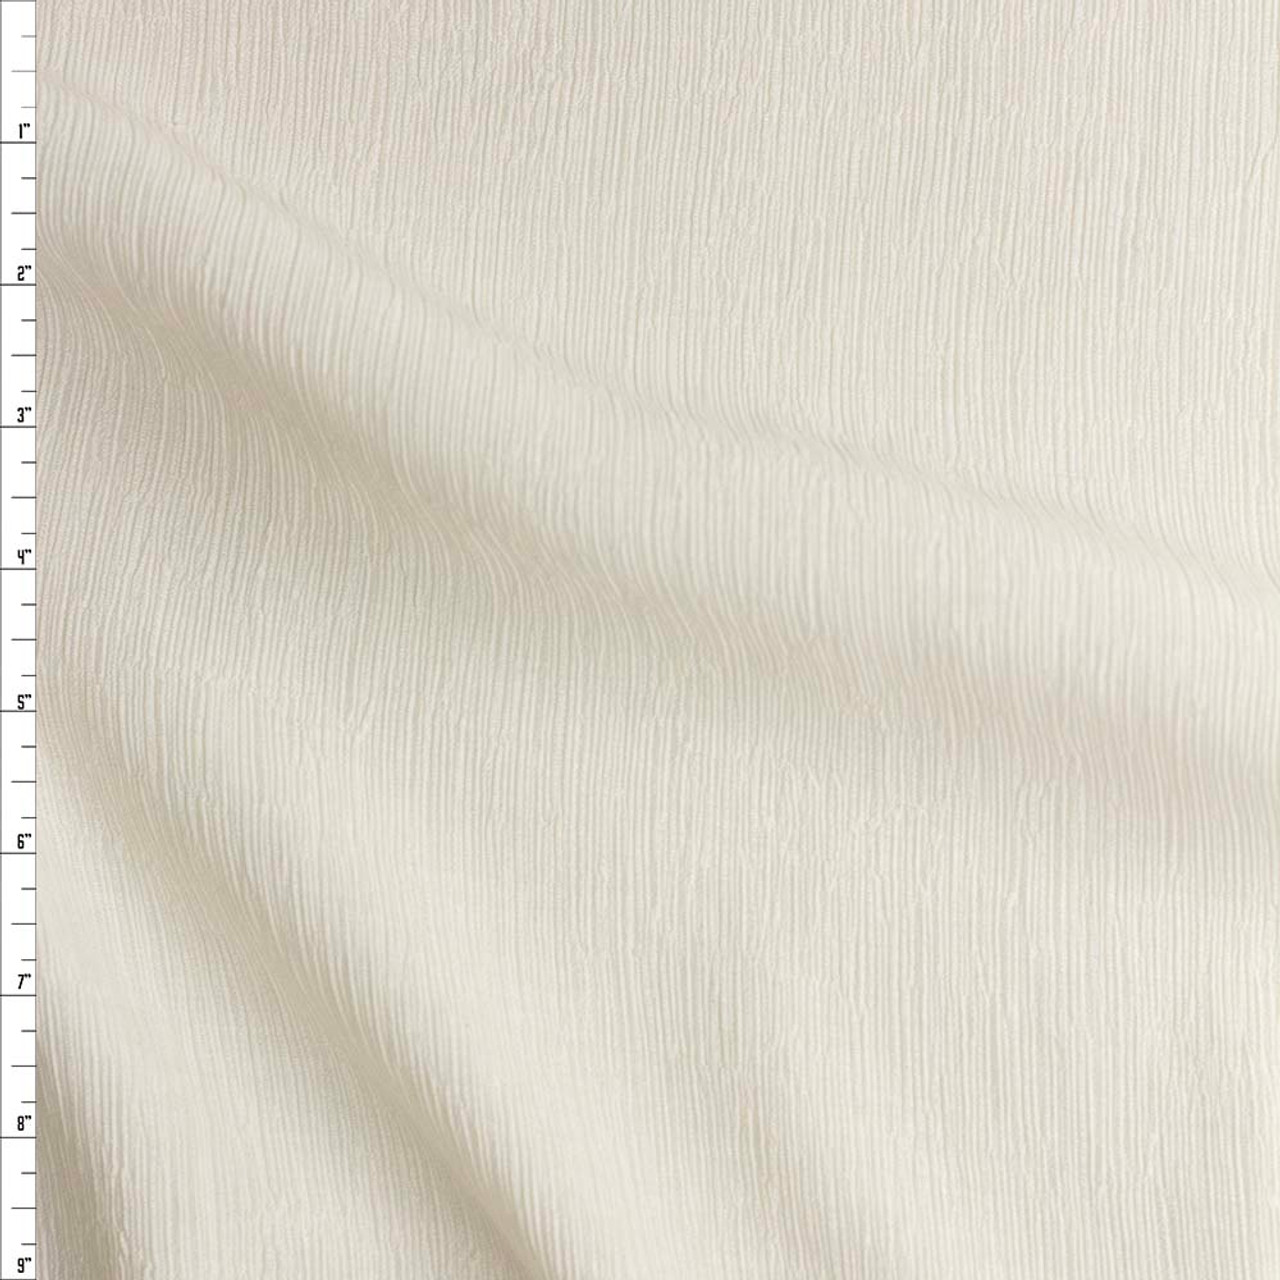 100% Cotton Rayon - EU Fabrics